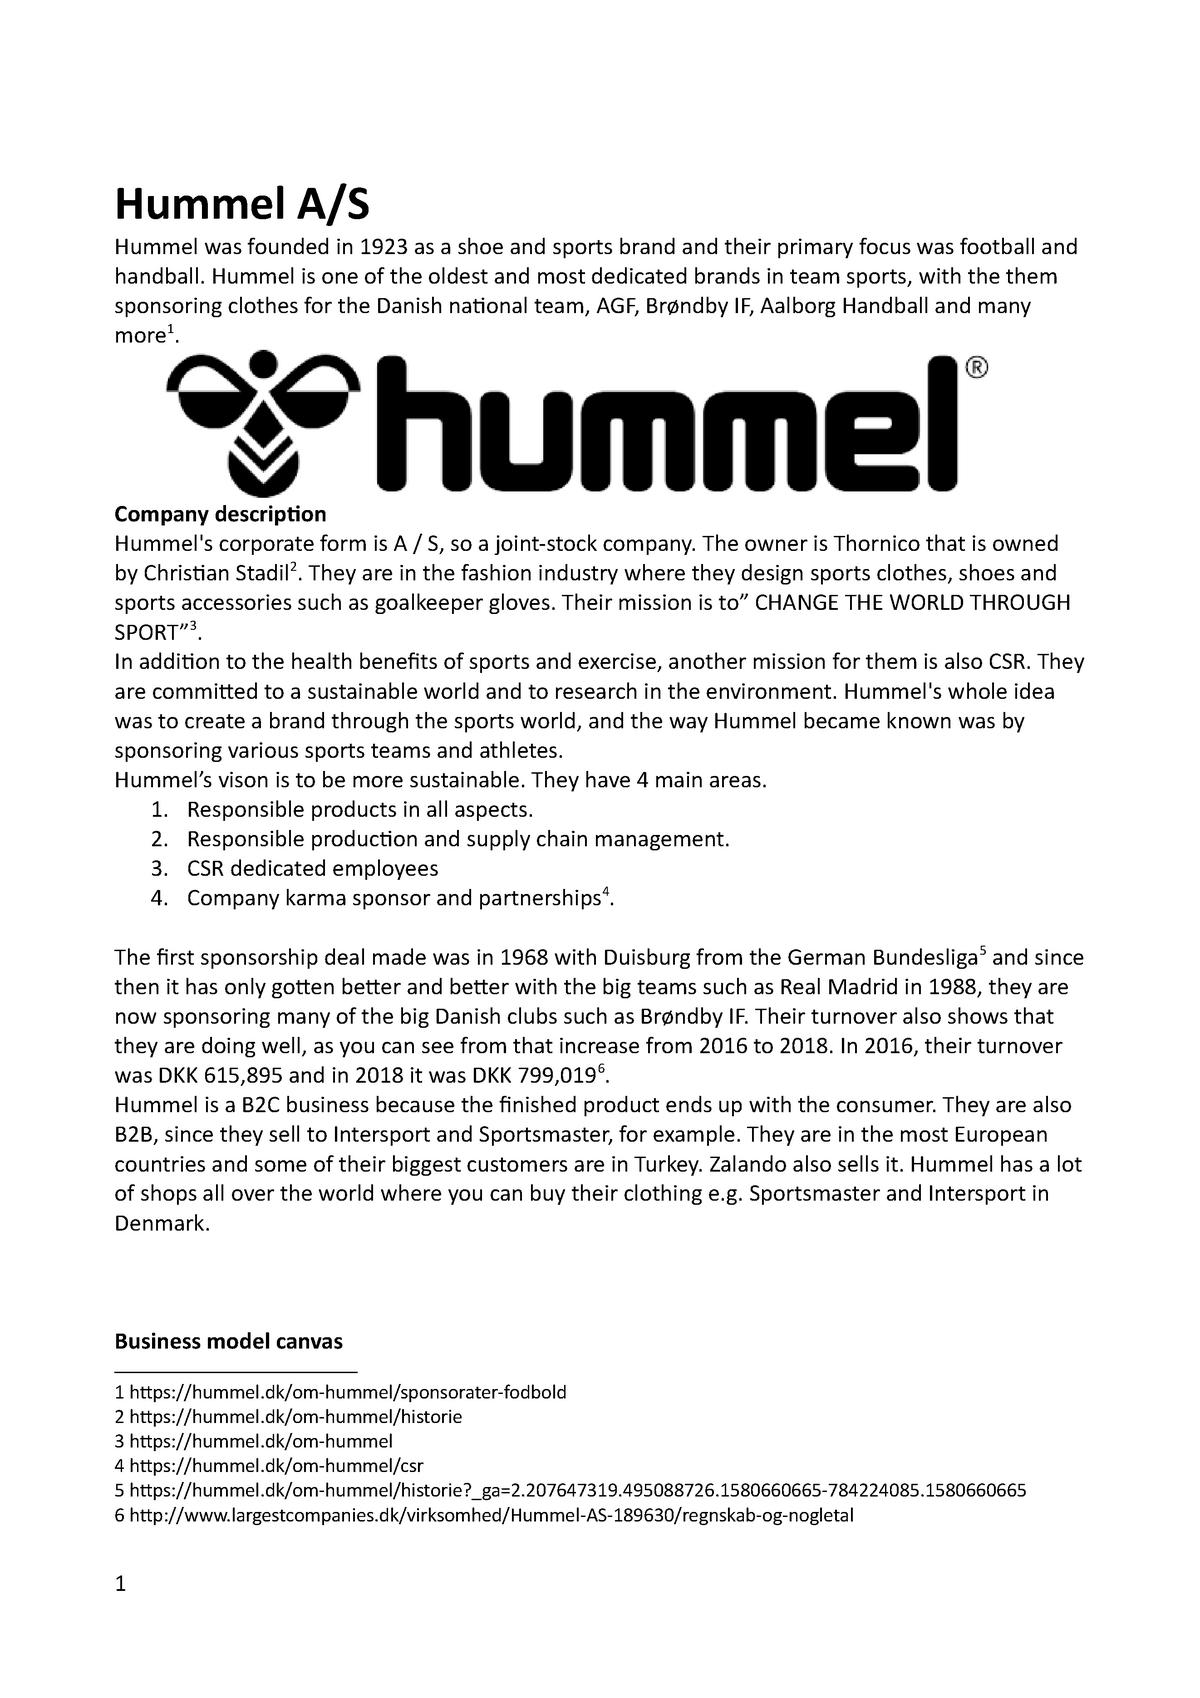 Det er det heldige sælge Støt Hummel marketing - afsætning - HVL - StuDocu